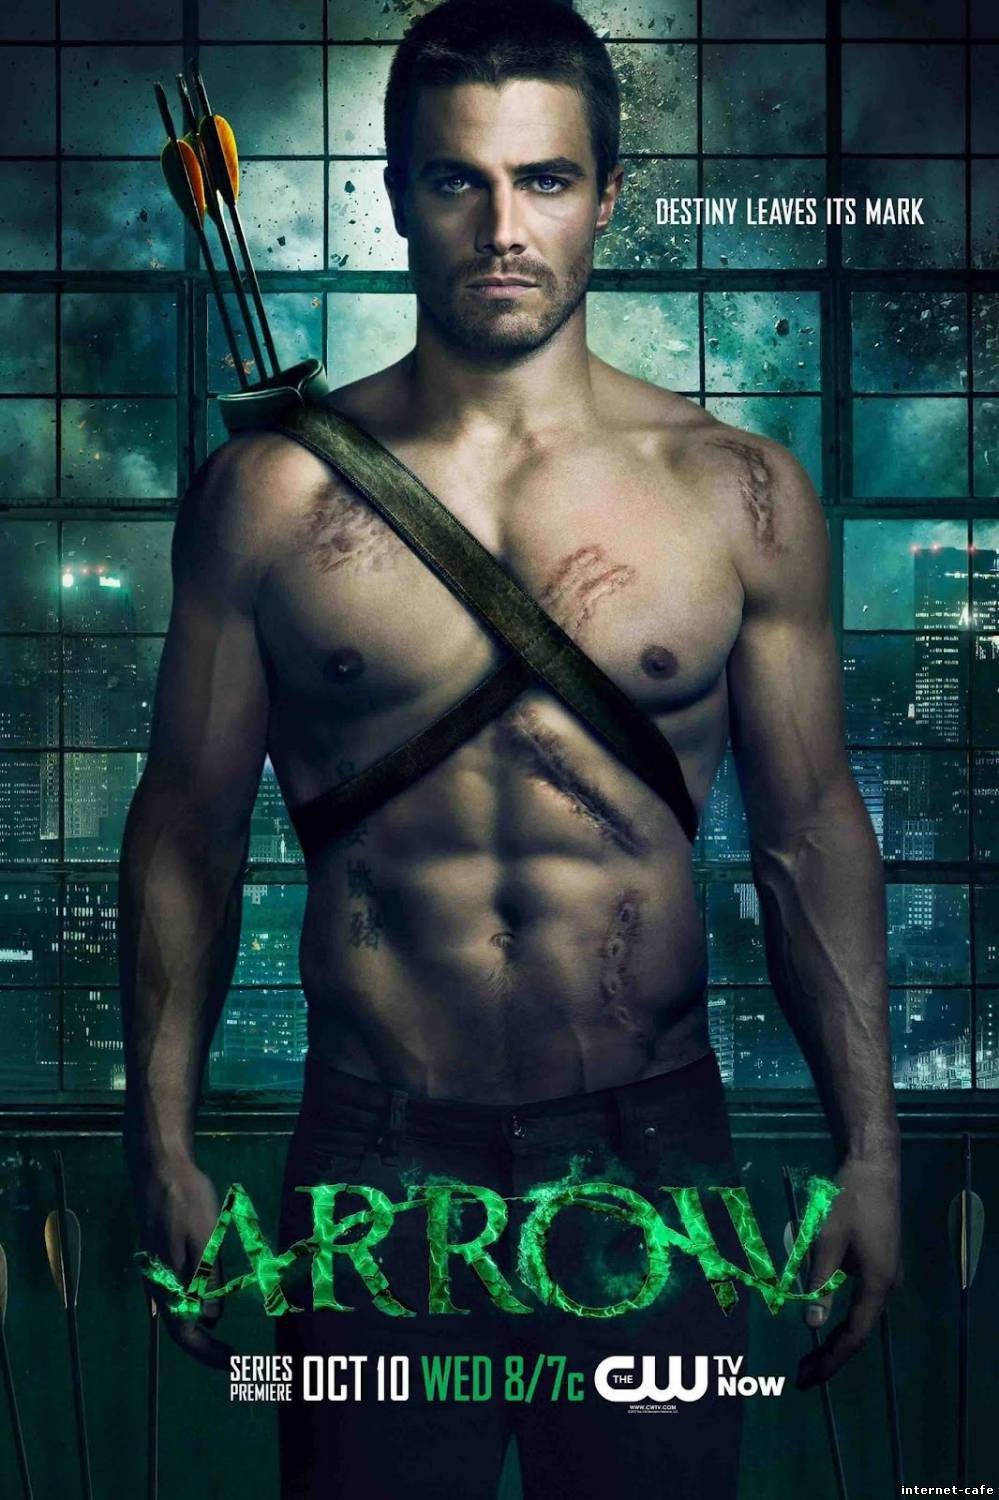 Arrow (2012) - S01E01 - Pilot